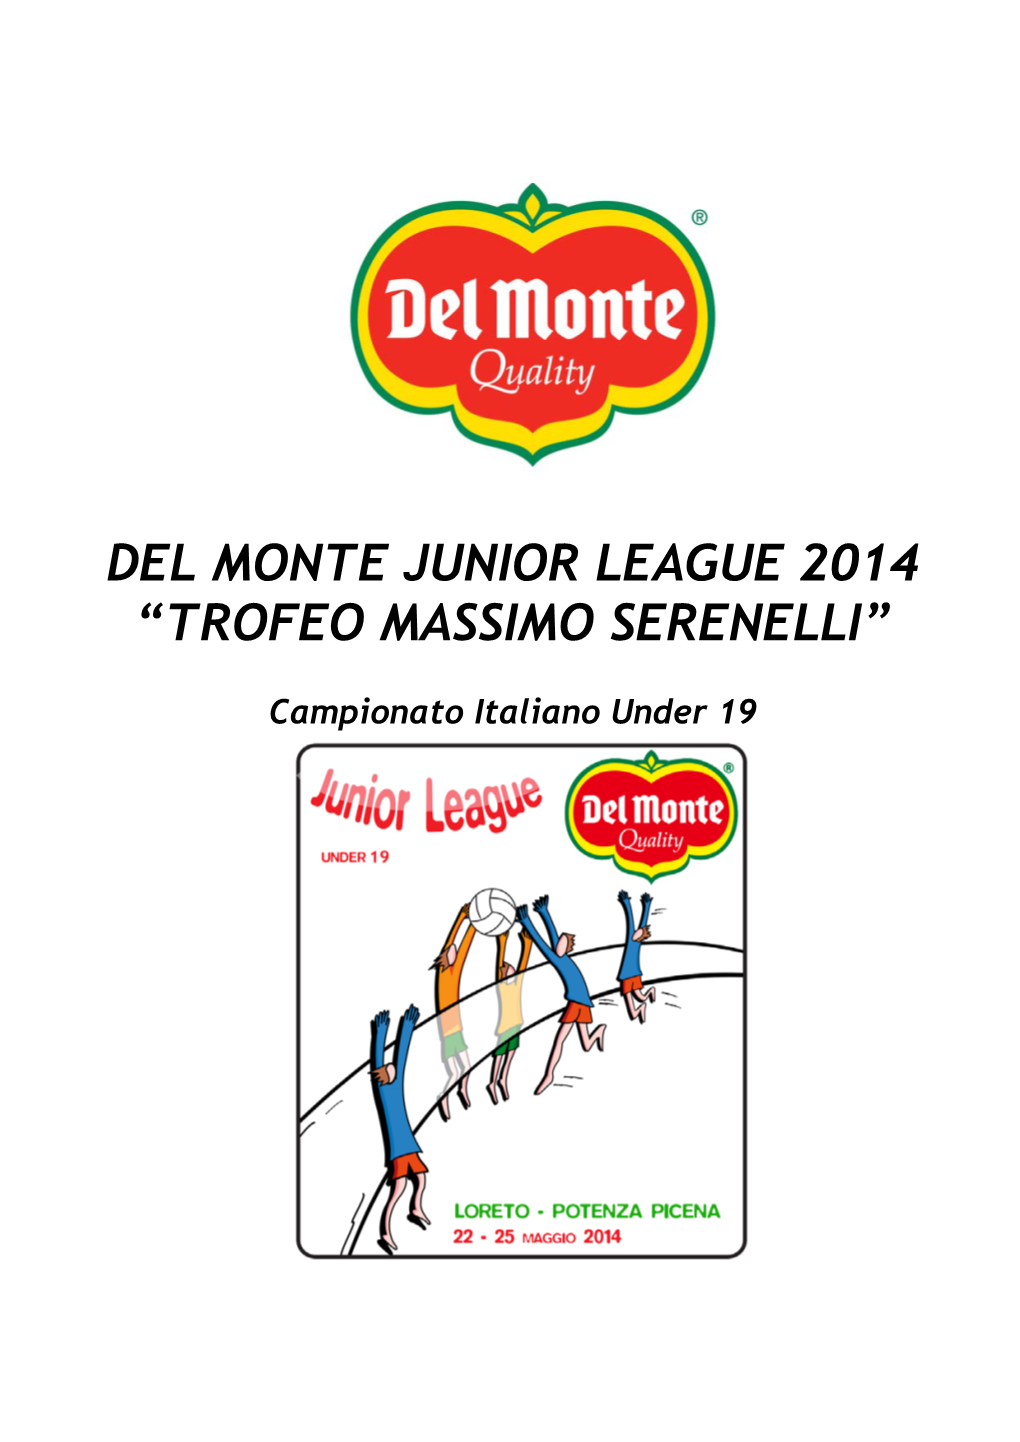 Del Monte Junior League 2014 “Trofeo Massimo Serenelli”